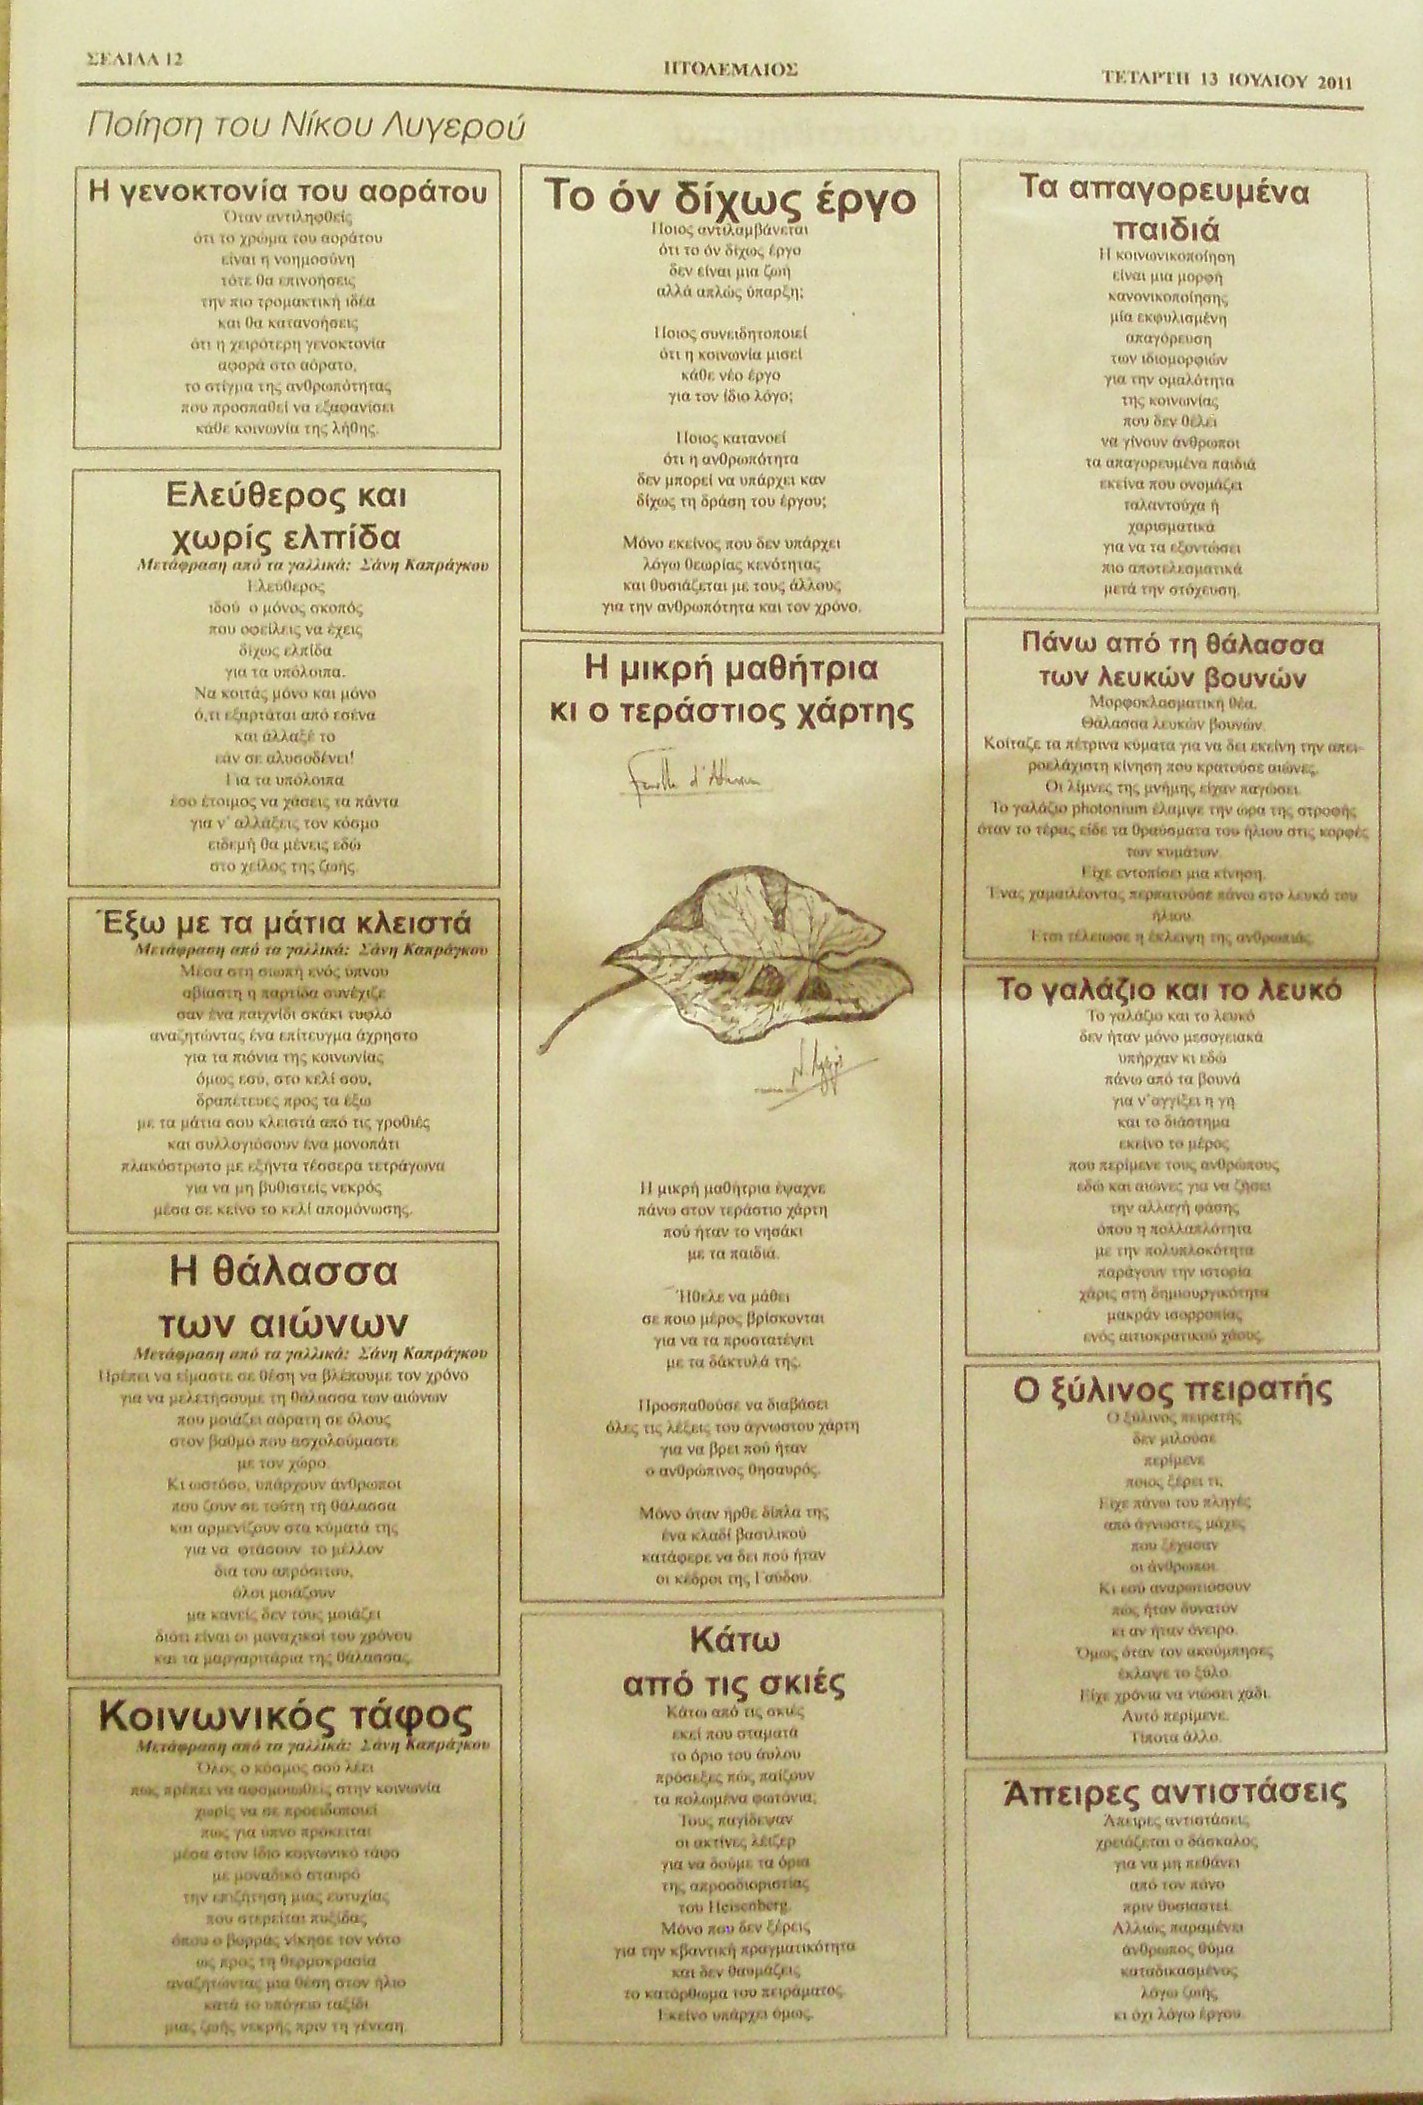 Ποίηση Νίκου Λυγερού: Οι φιλικοί και το τζάκι - Η διδασκαλία των χαμαιλεόντων - Εδώ είμαστε κοντά σου - Υπόγεια μουσική - Η έκπληξη β - Hommage à Giotto - Ασκήσεις με λουλούδια - Ισπανικός διάλογος - Ο αγώνας της φιλικής - Αυτοί που δεν κοιμούνται. Πτολεμαίος, 13/07/2011.